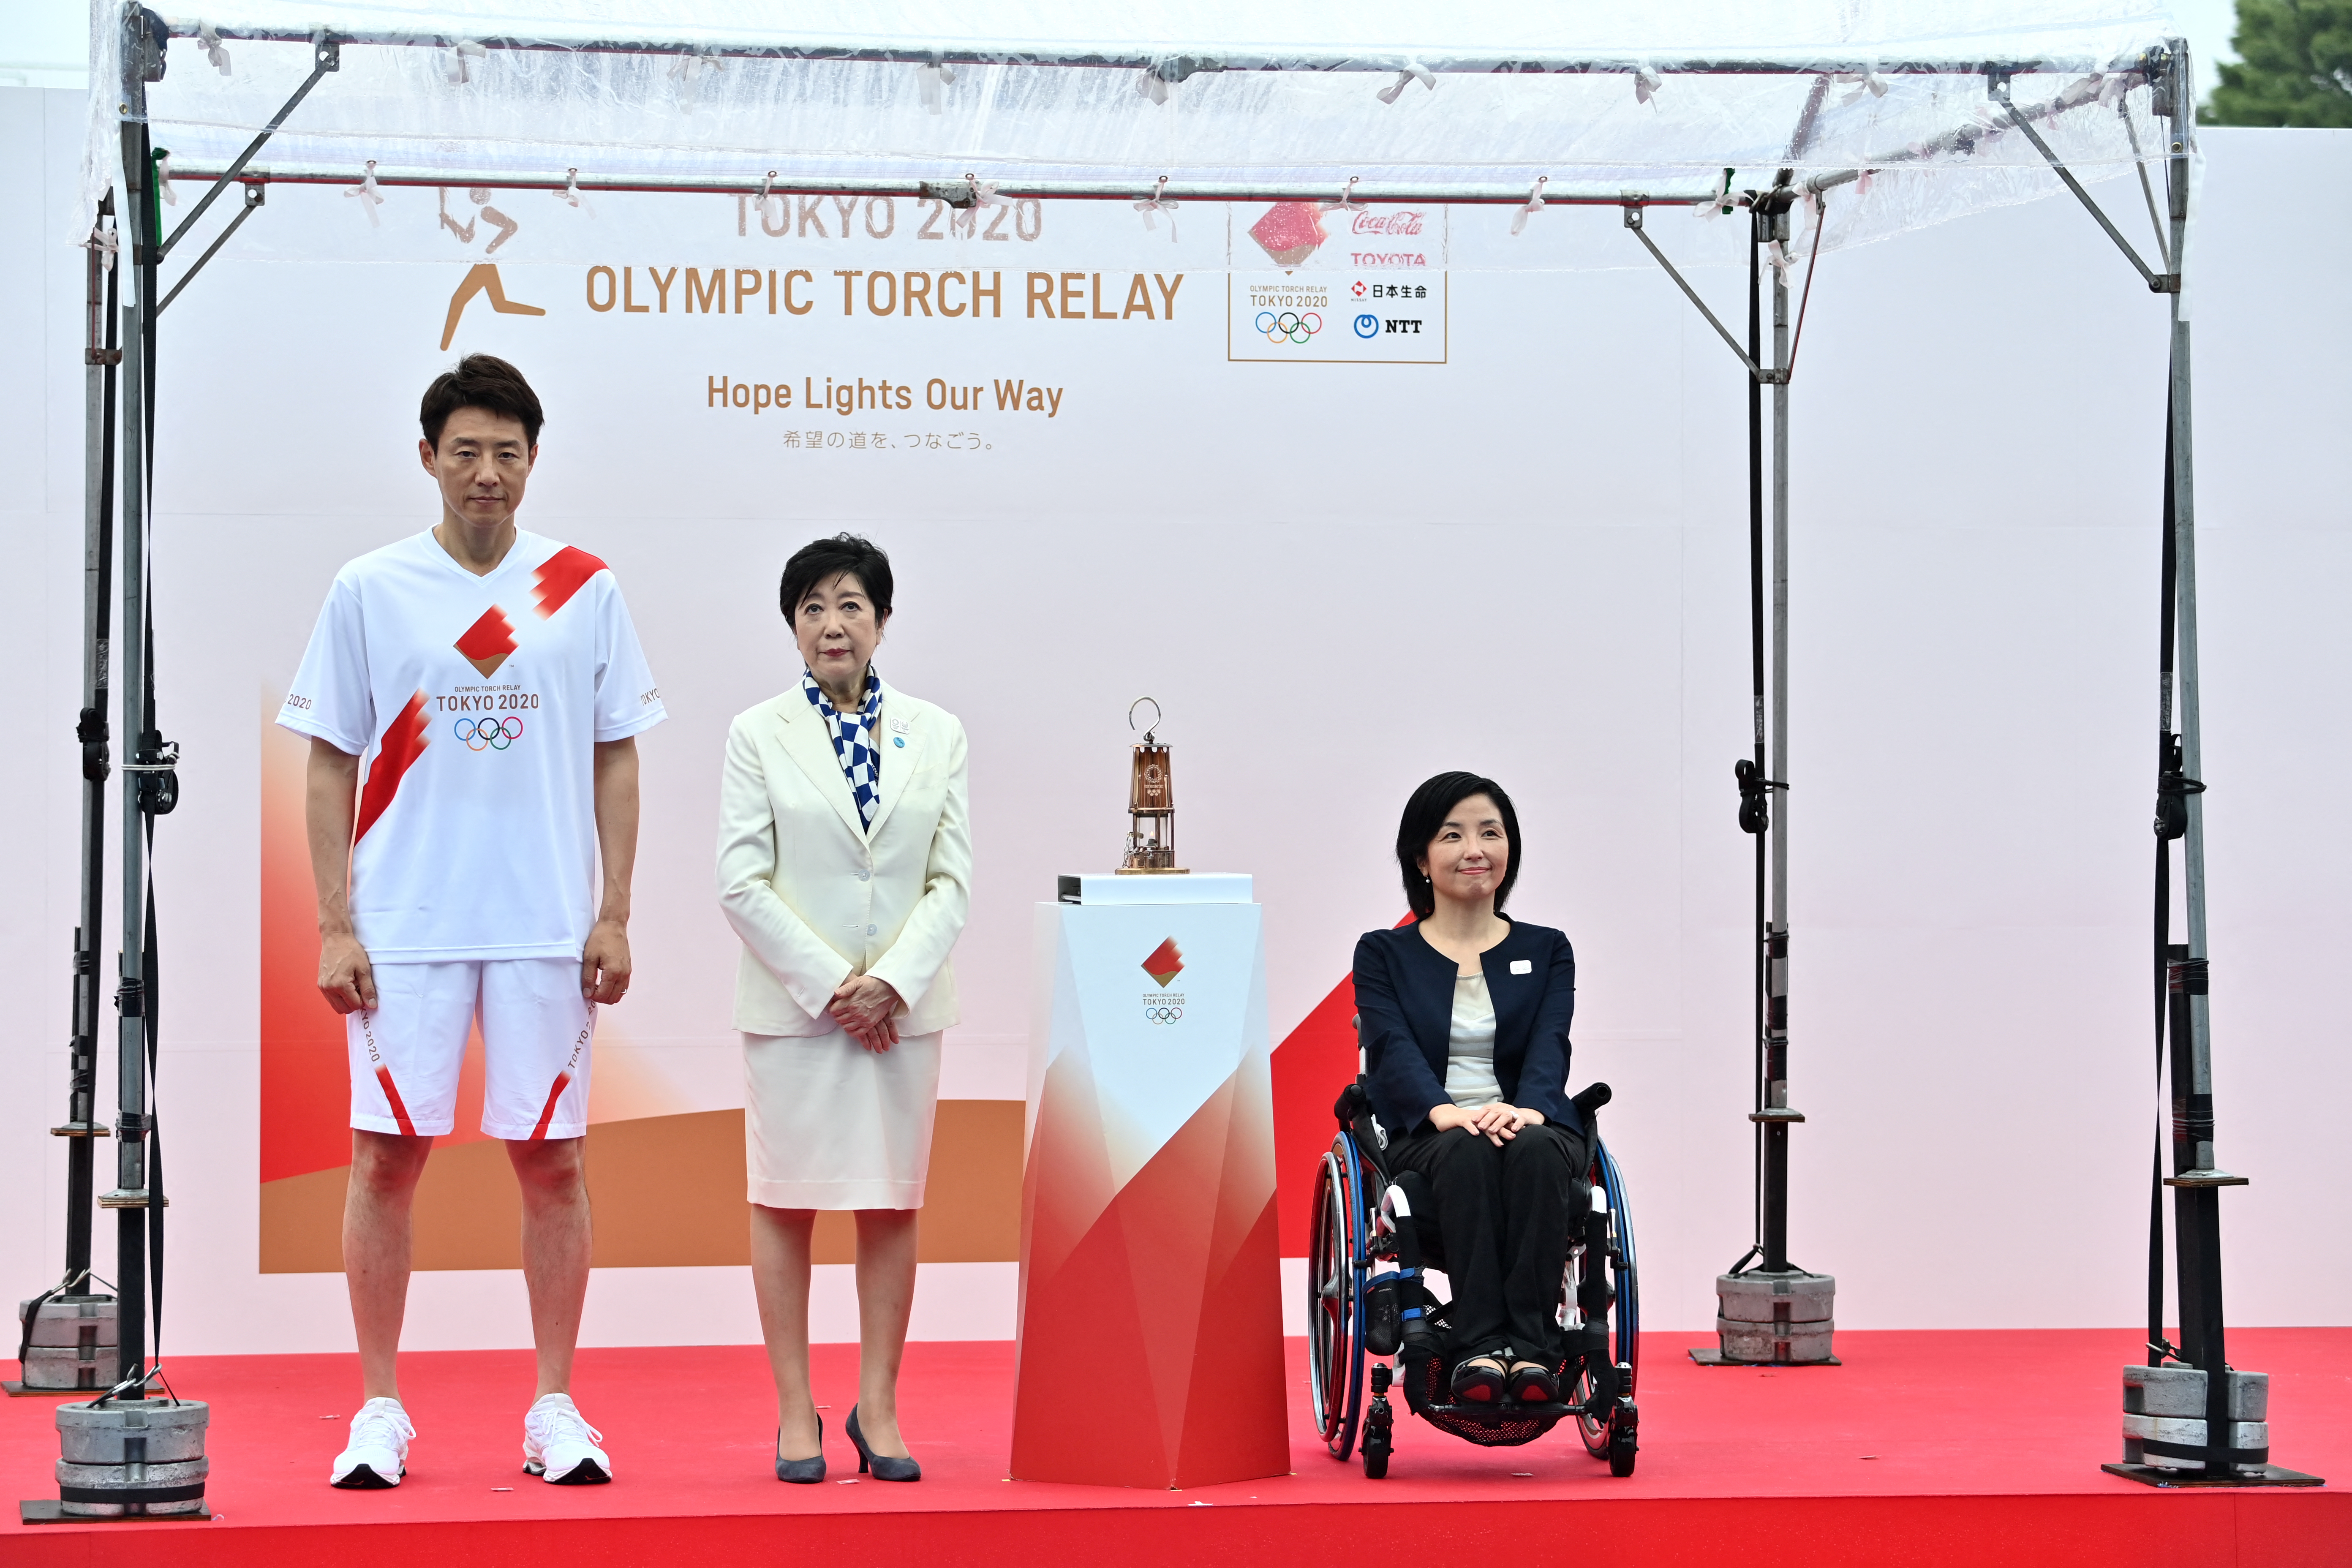 La antorcha olímpica llegó a Tokio para un relevo sin espectadores